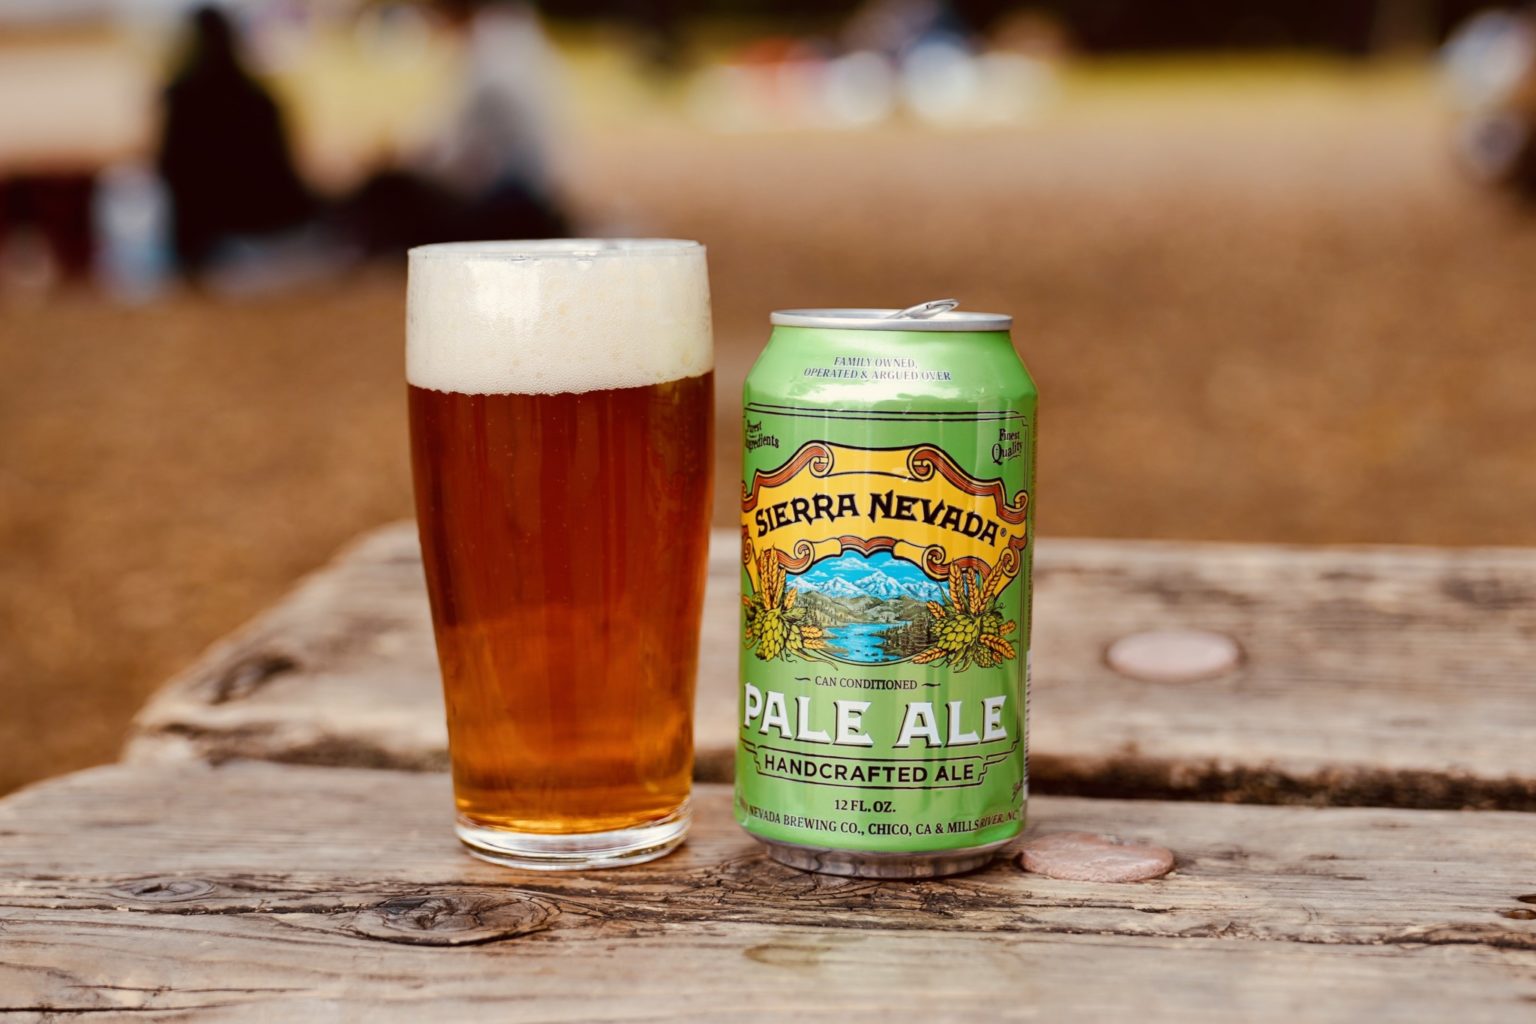 「Sierra Nevada Pale Ale（シエラネバダ ペール エール）」。ユニークなホール・カスケードホップの松、グレー プフルーツやシトラスのアロマとフレイバーが特徴。